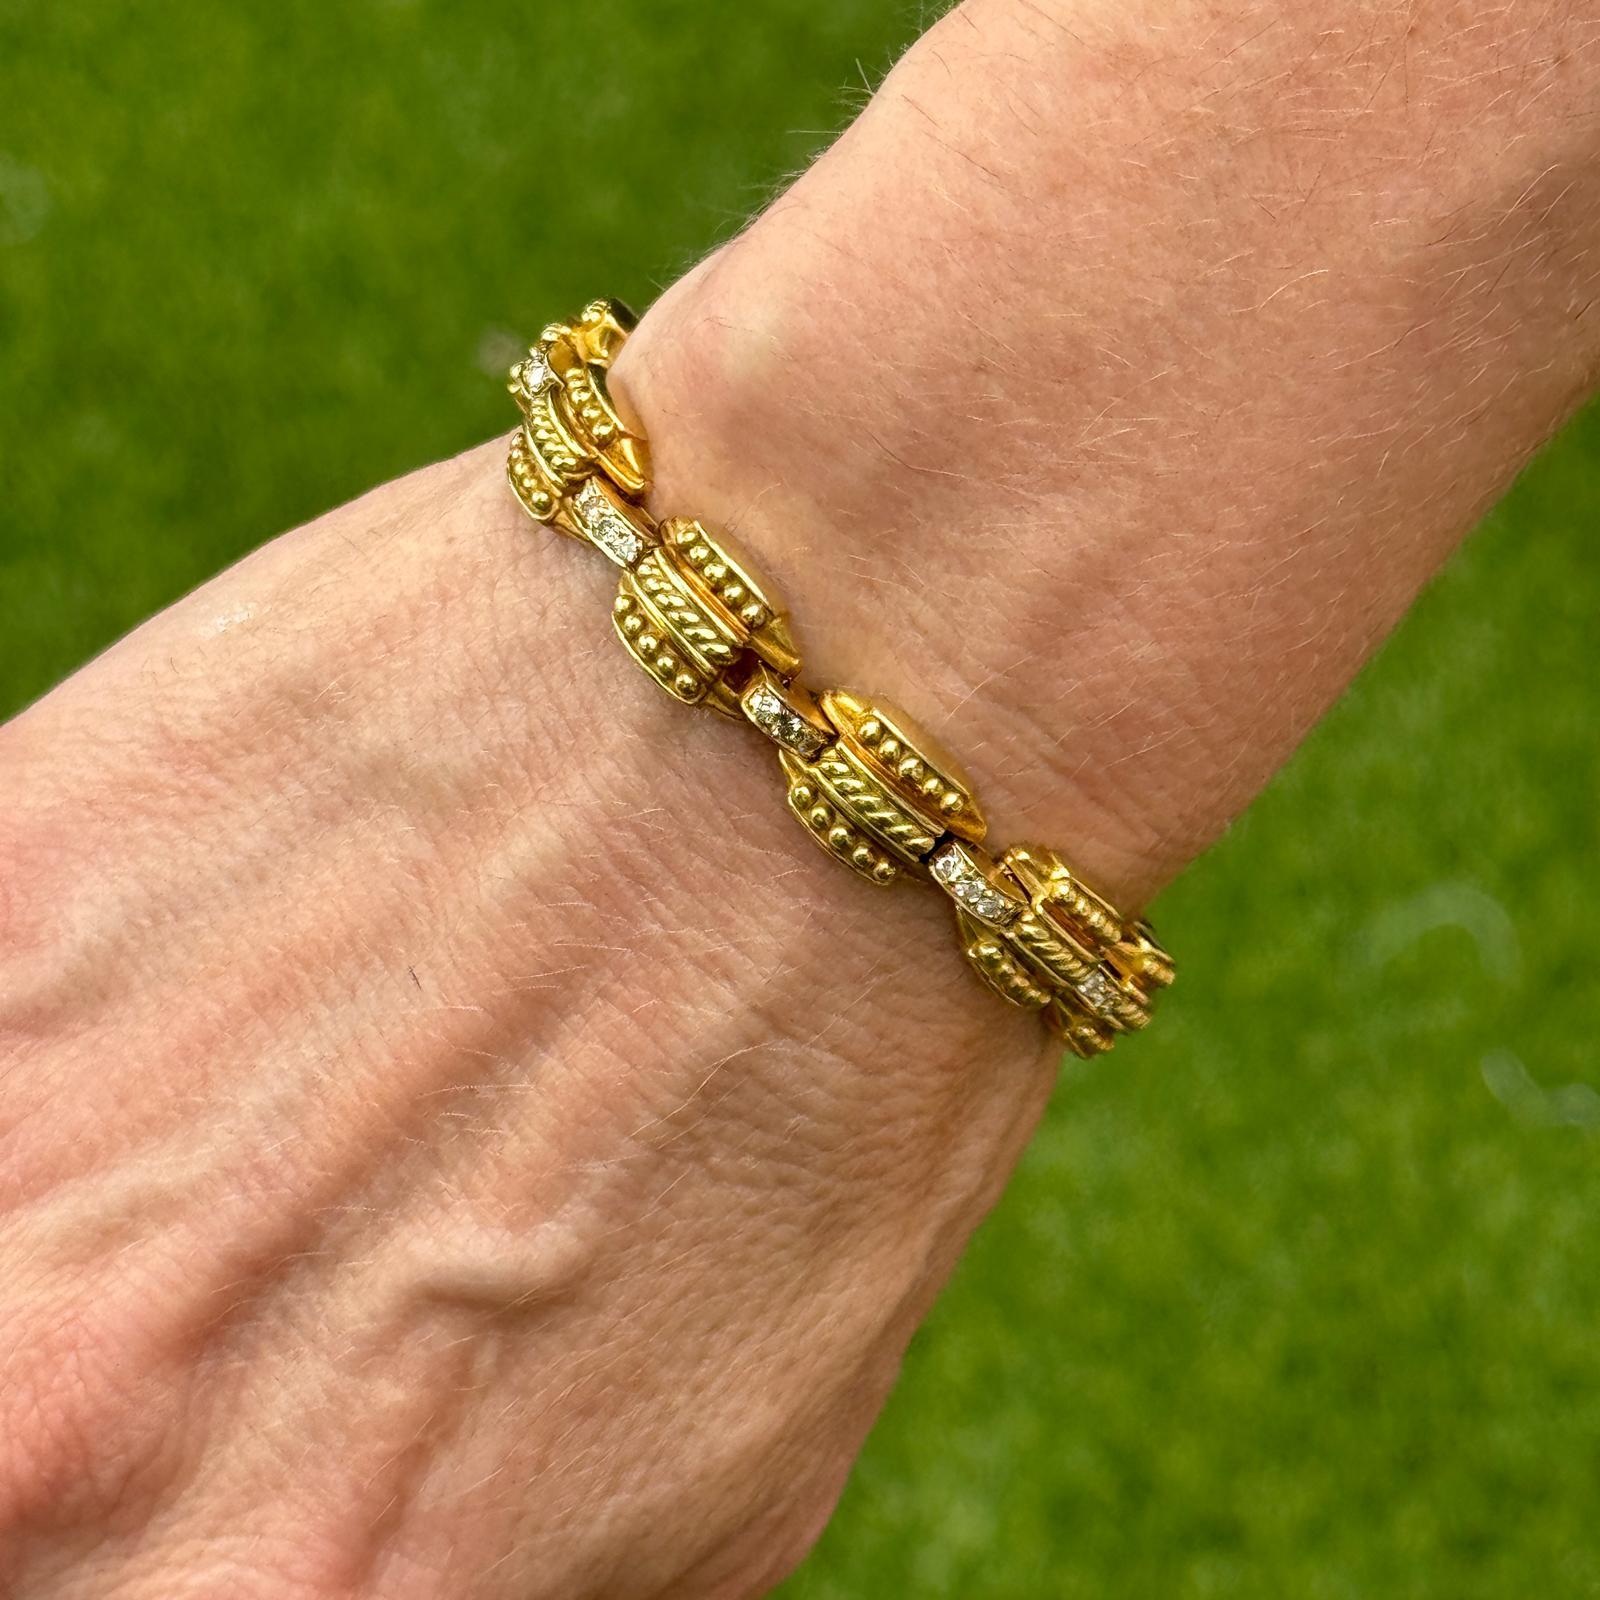 Diamantgliederarmband im etruskischen Stil aus 18 Karat Gelbgold. Das Armband enthält 39 runde Diamanten im Brillantschliff mit einem Gesamtgewicht von etwa 1,17 Karat. Die Diamanten sind von der Farbe G-H und der Reinheit VS2-SI1. Das Armband misst